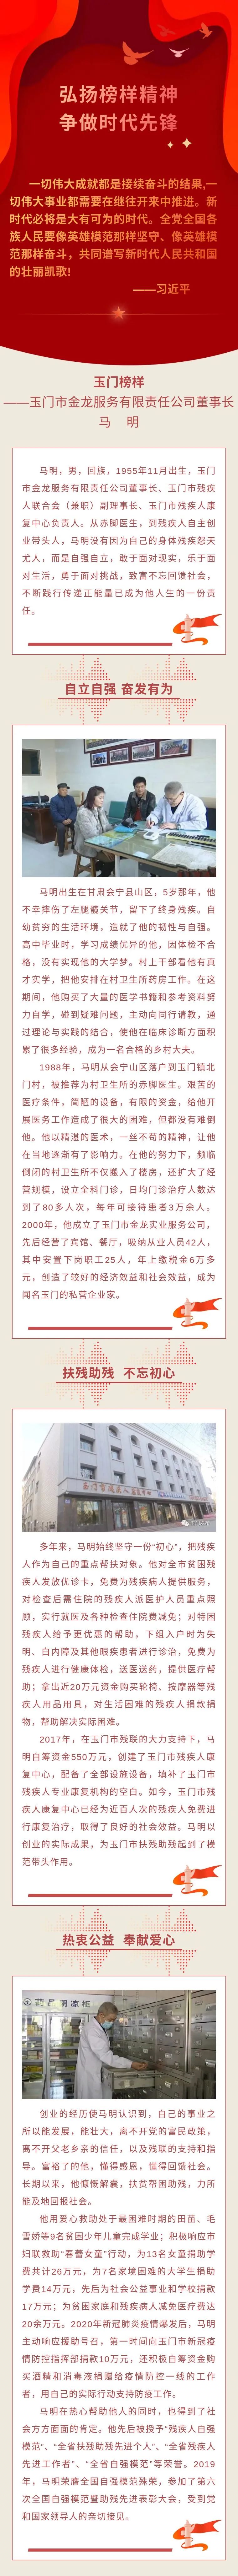 【时代先锋】杏彩官网
市金龙服务有限责任公司董事长 马明